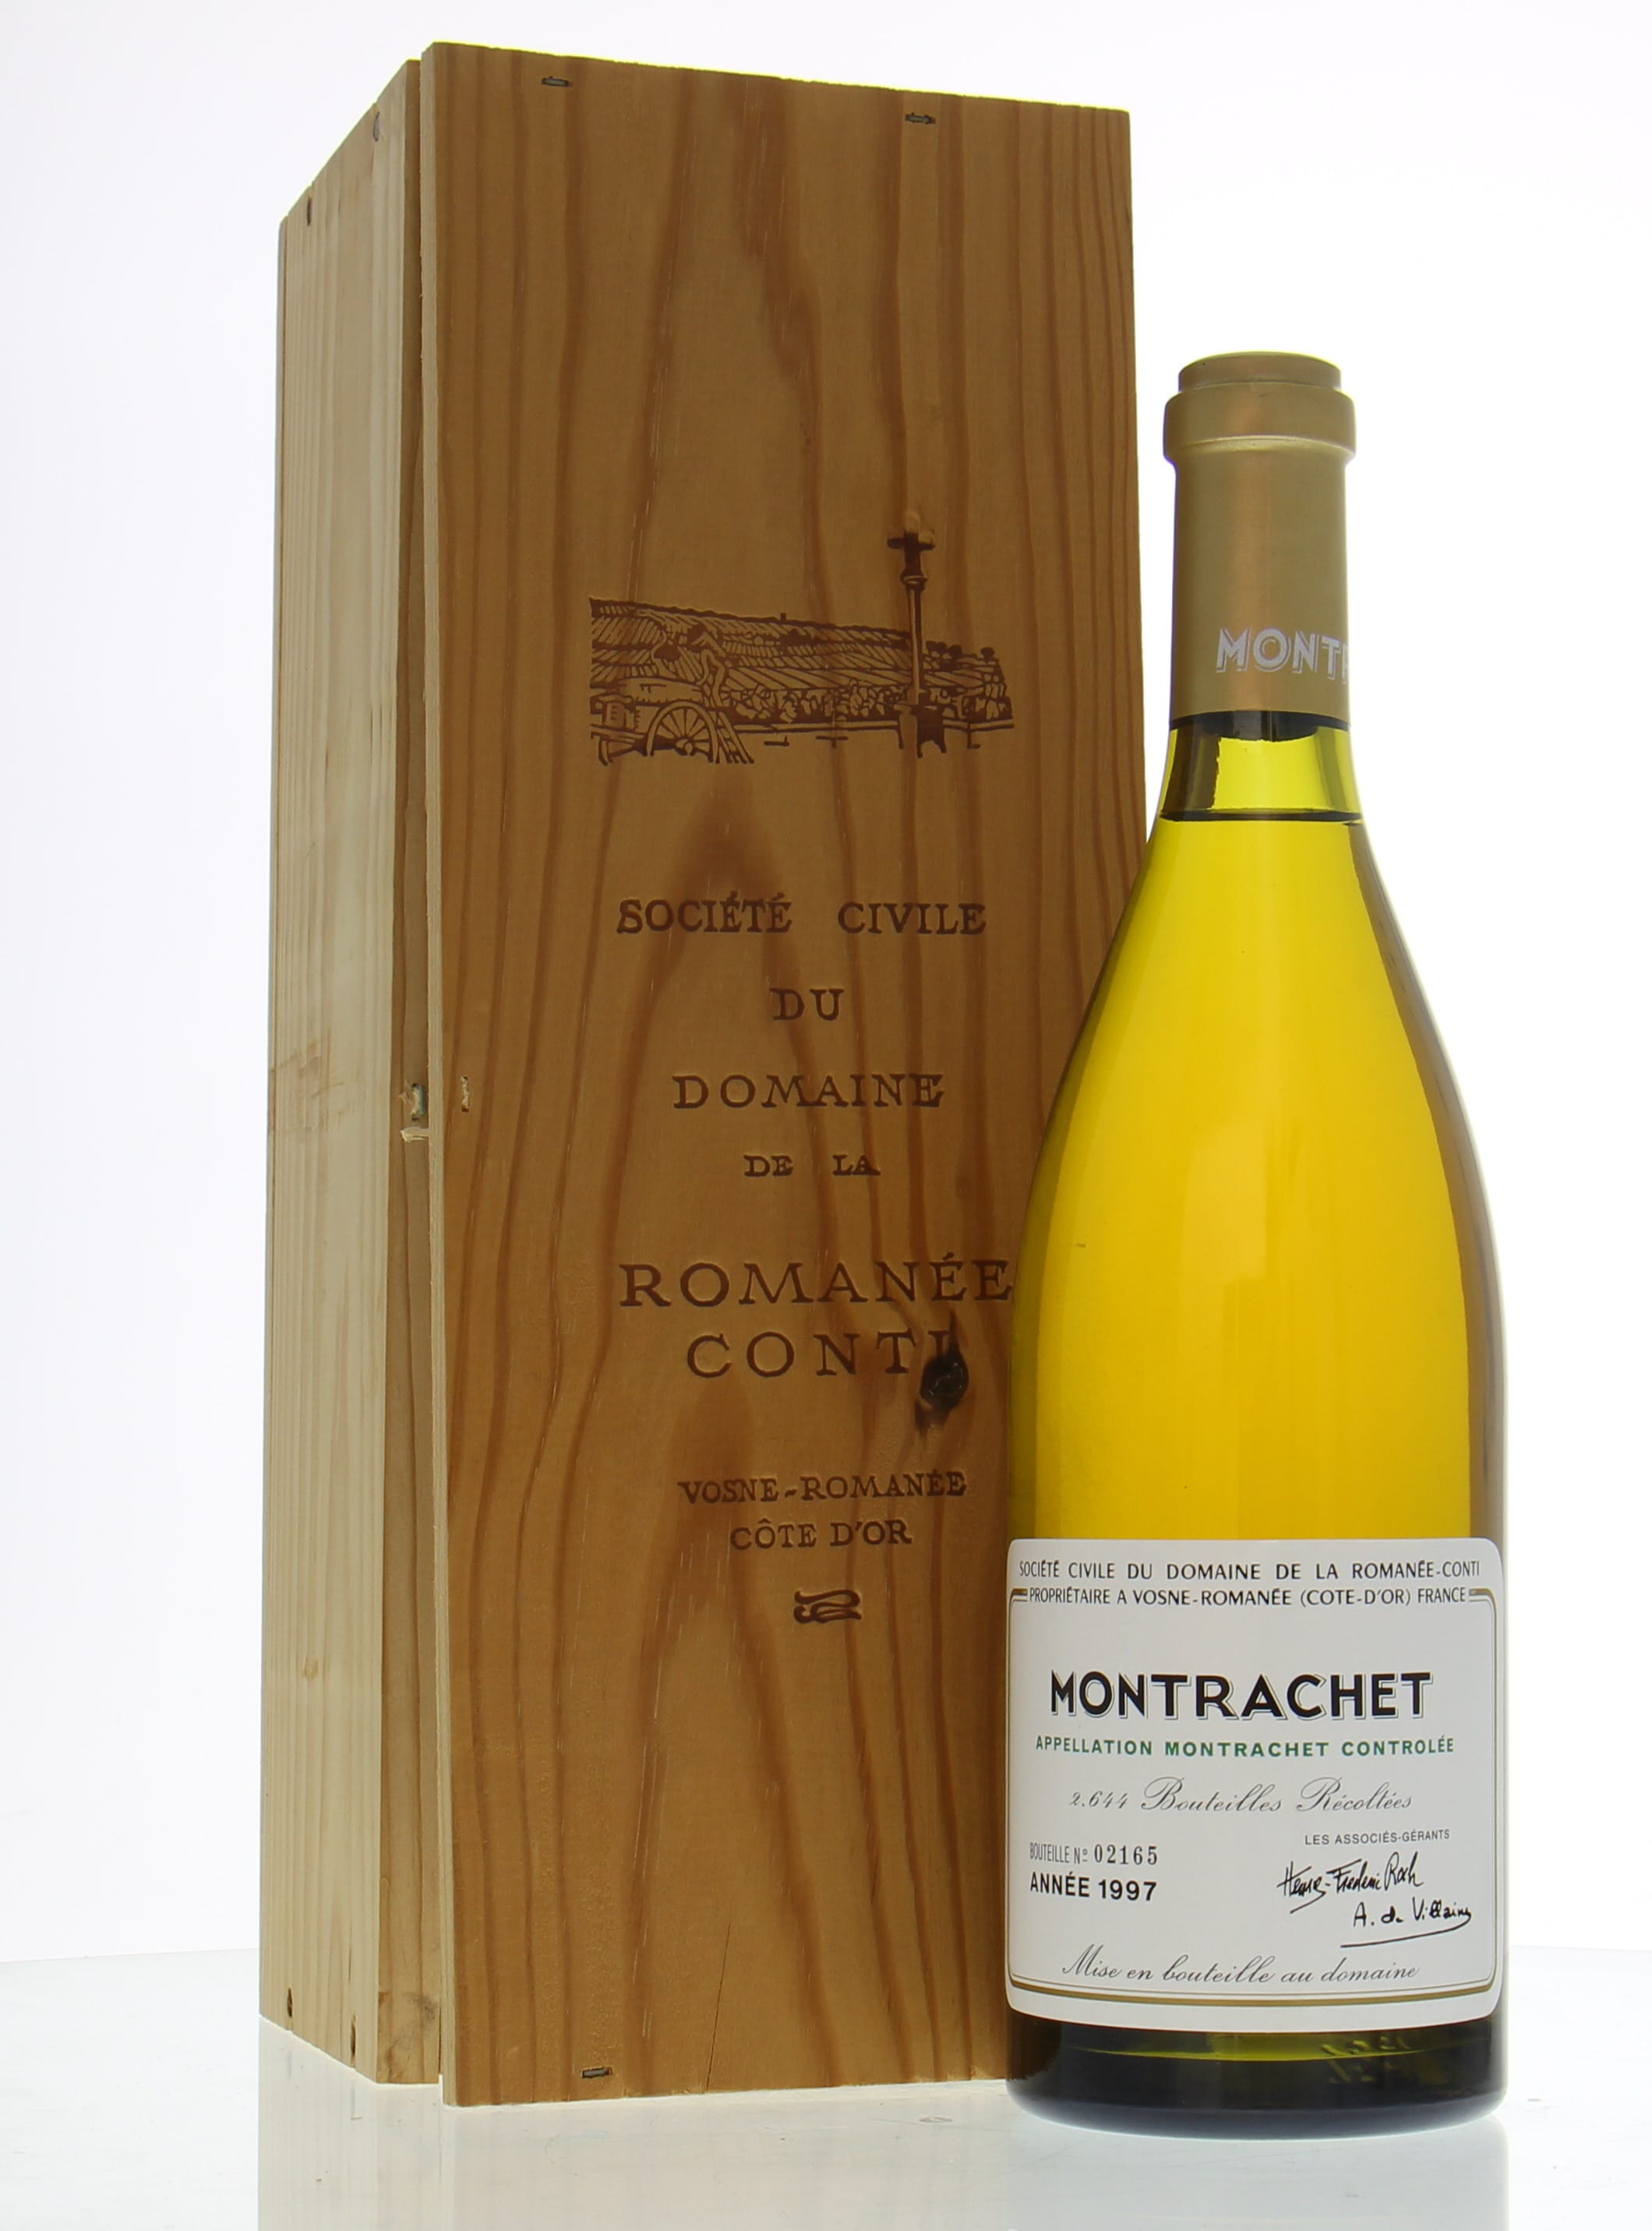 Domaine de la Romanee Conti - Montrachet 1997 From Original Wooden Case